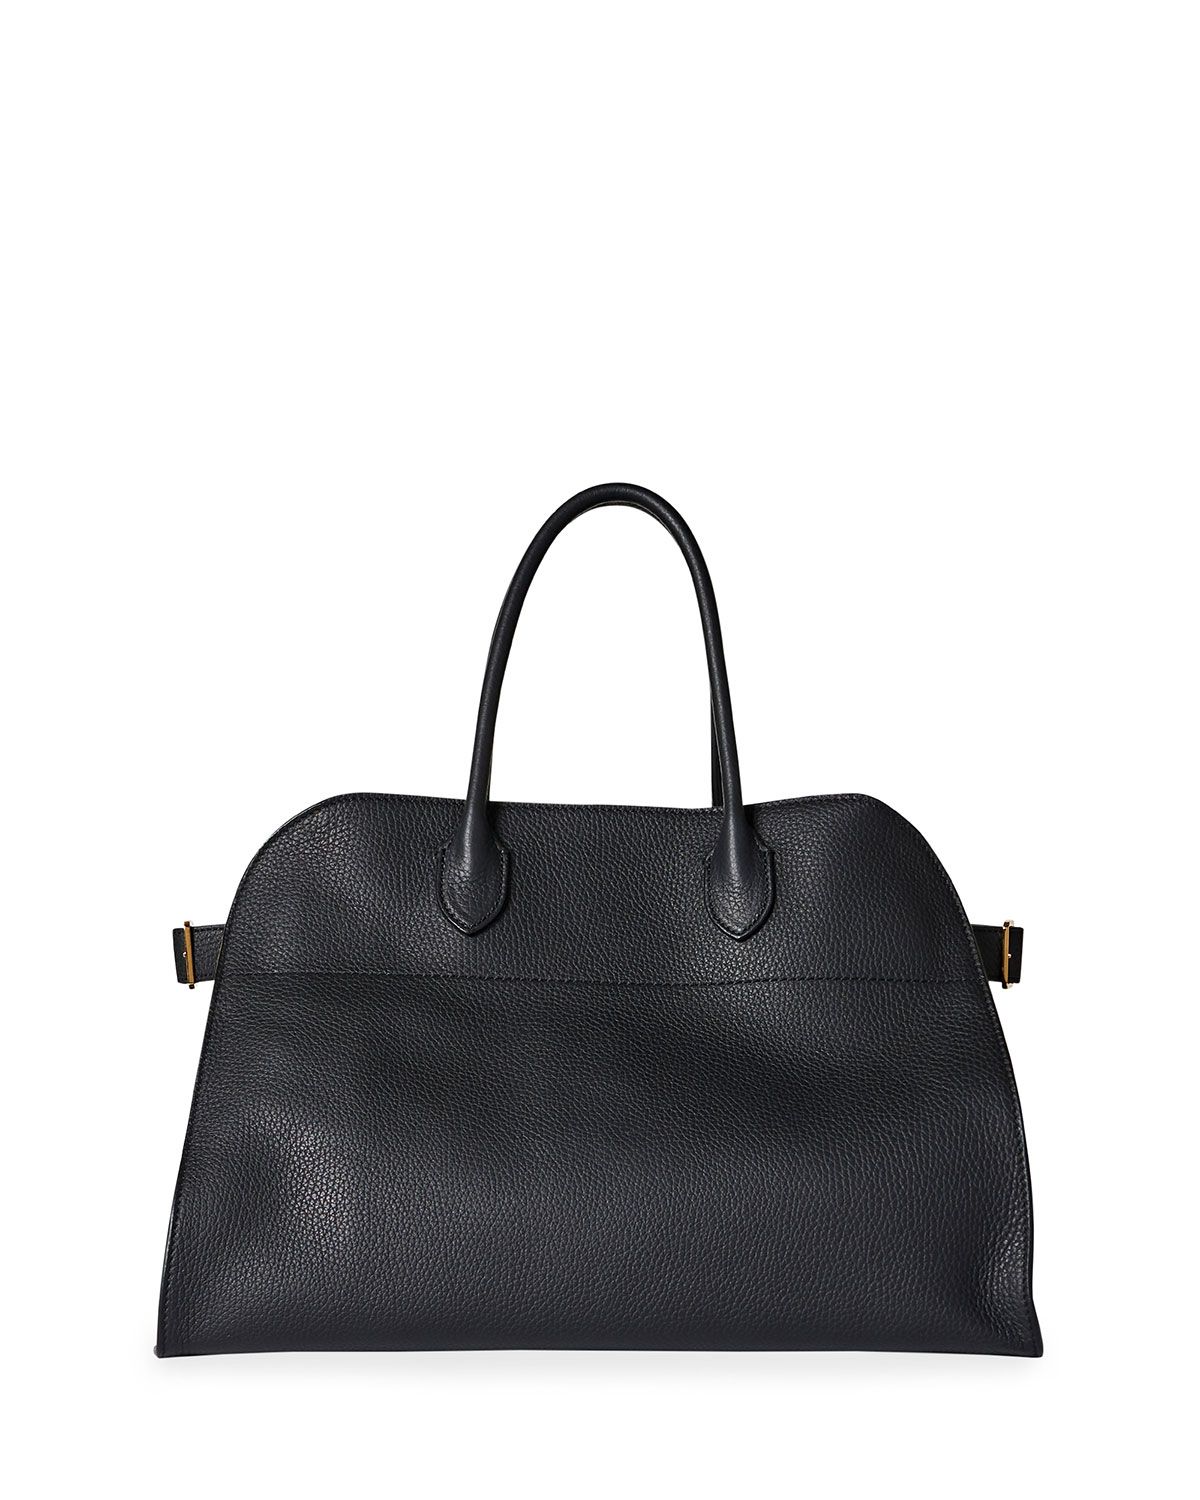 Margaux 15 Top Handle Bag | Neiman Marcus